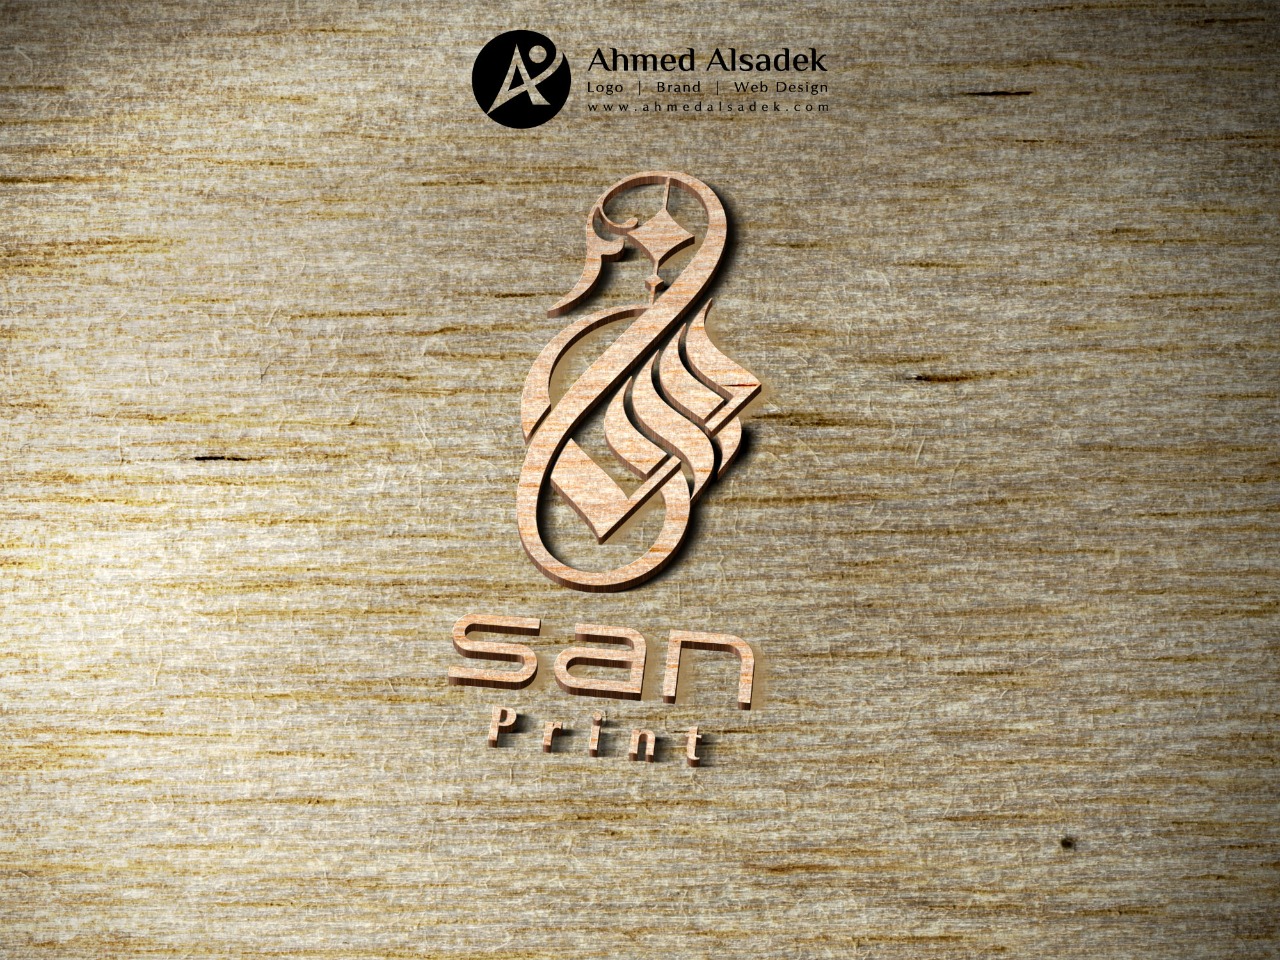 تصميم شعار شركة سان للديكور في المدينة المنورة السعودية 4